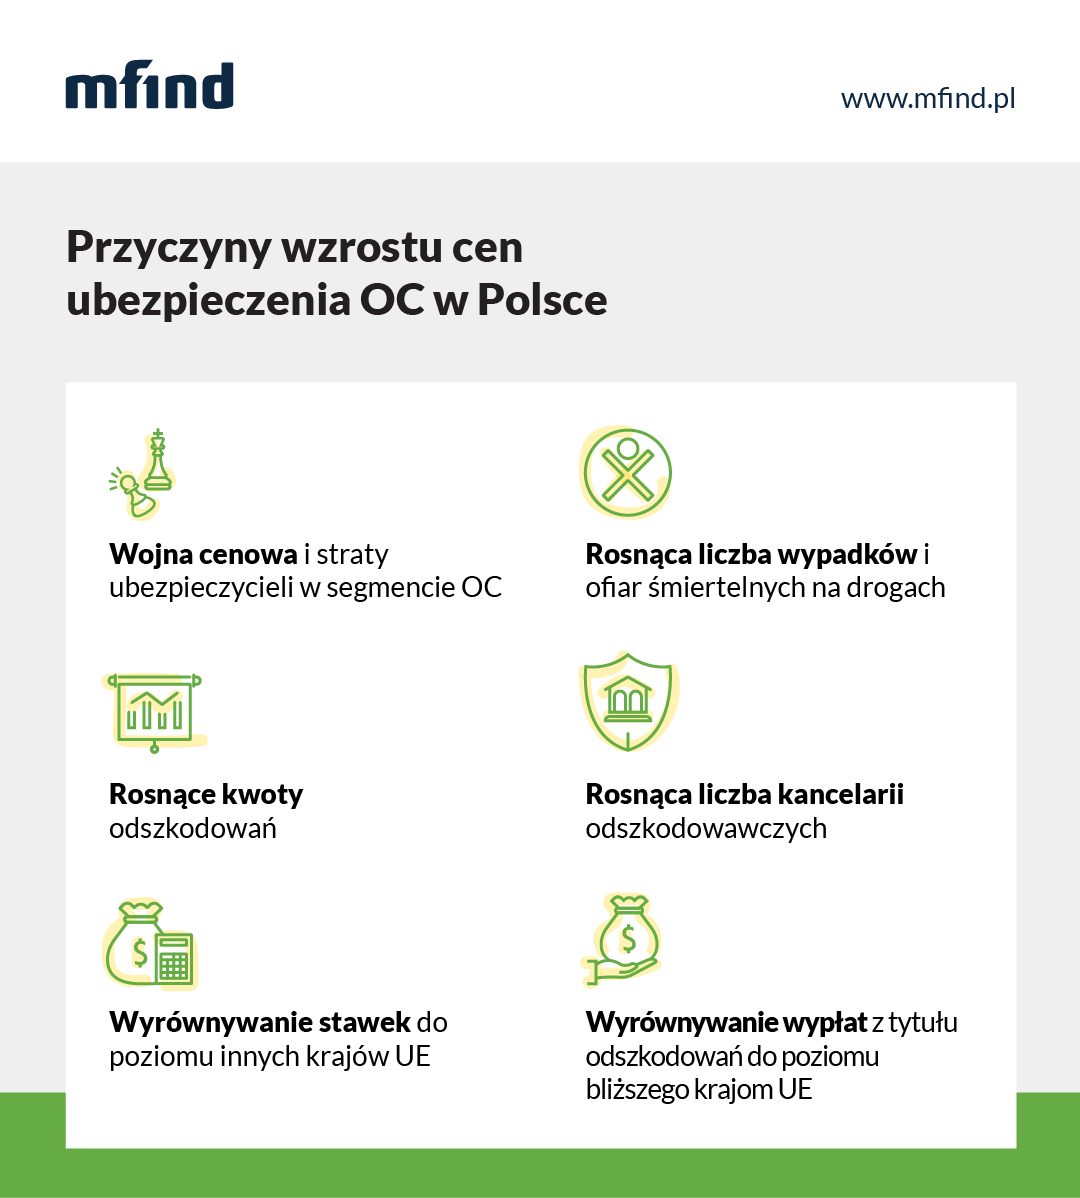 Przyczyny wzrostu cen OC w Polsce